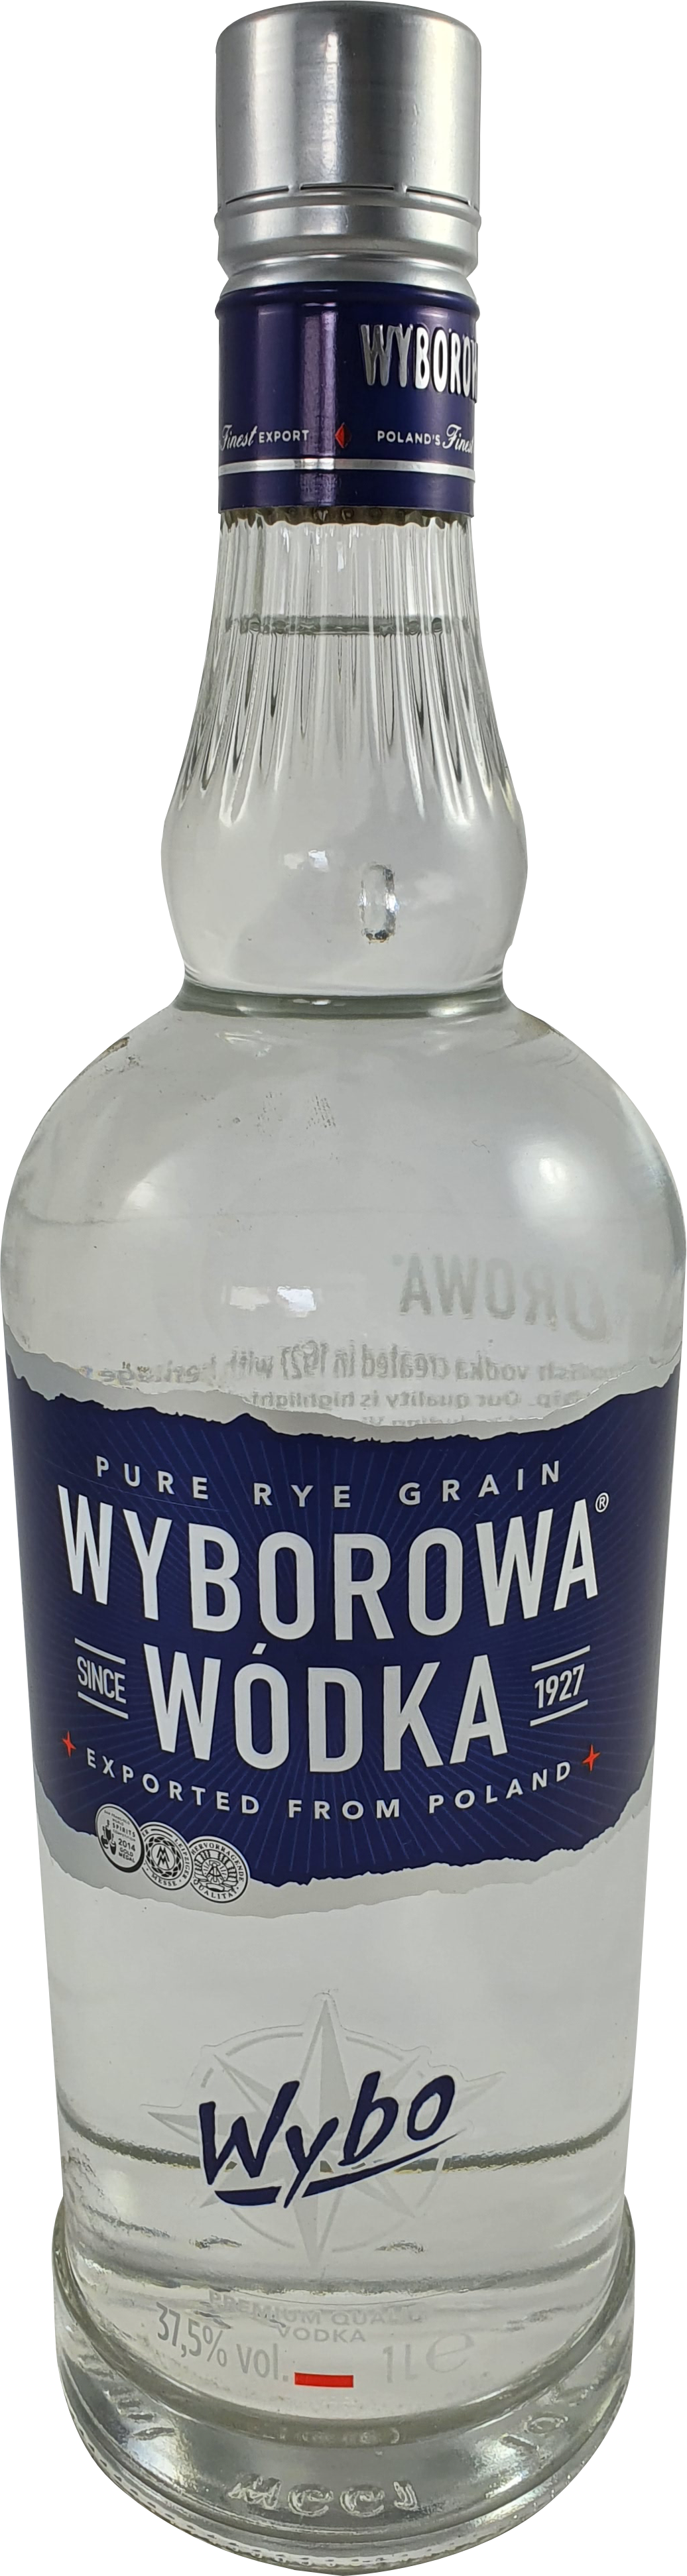 Wyborowa Pol Wodka 37.5% 